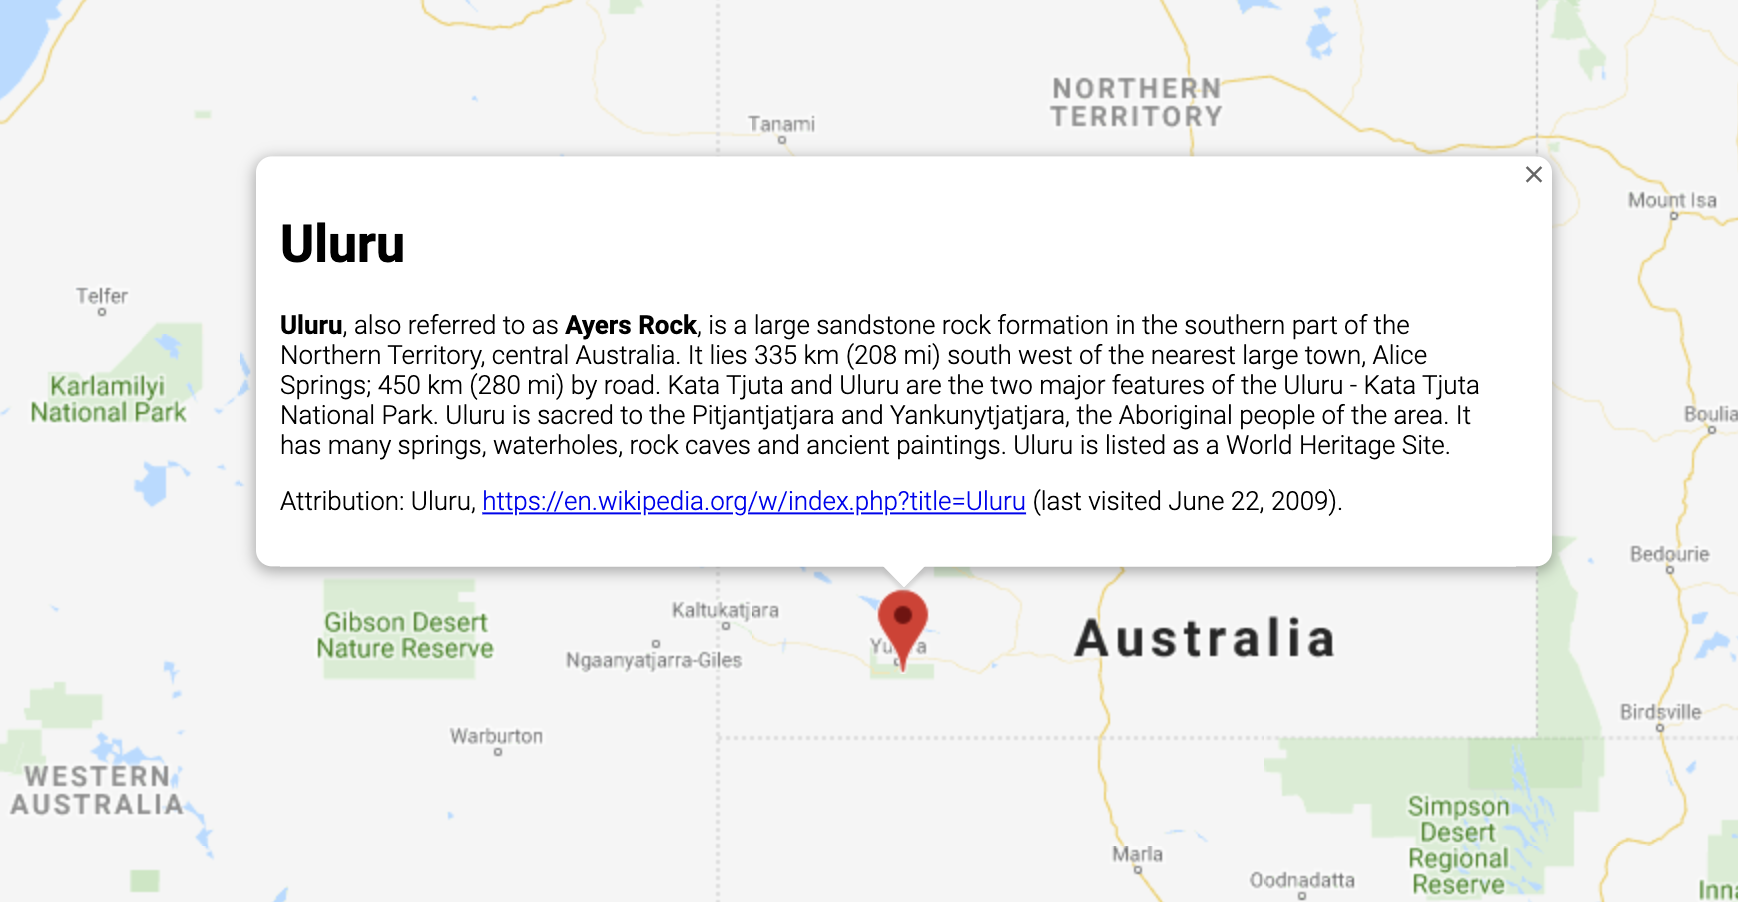 InfoWindow แสดงข้อมูลเกี่ยวกับสถานที่ในออสเตรเลีย